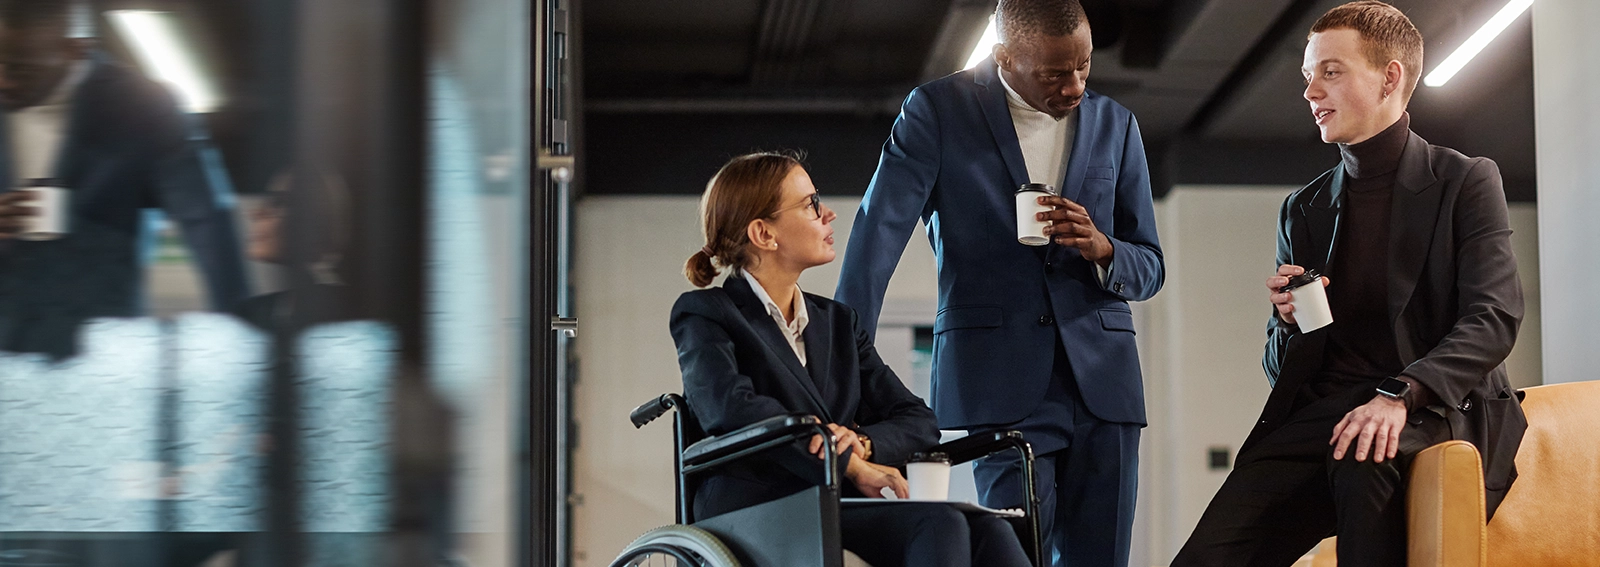 Deux travailleurs, dont un en fauteuil roulant, discutent ensemble dans un bureau.